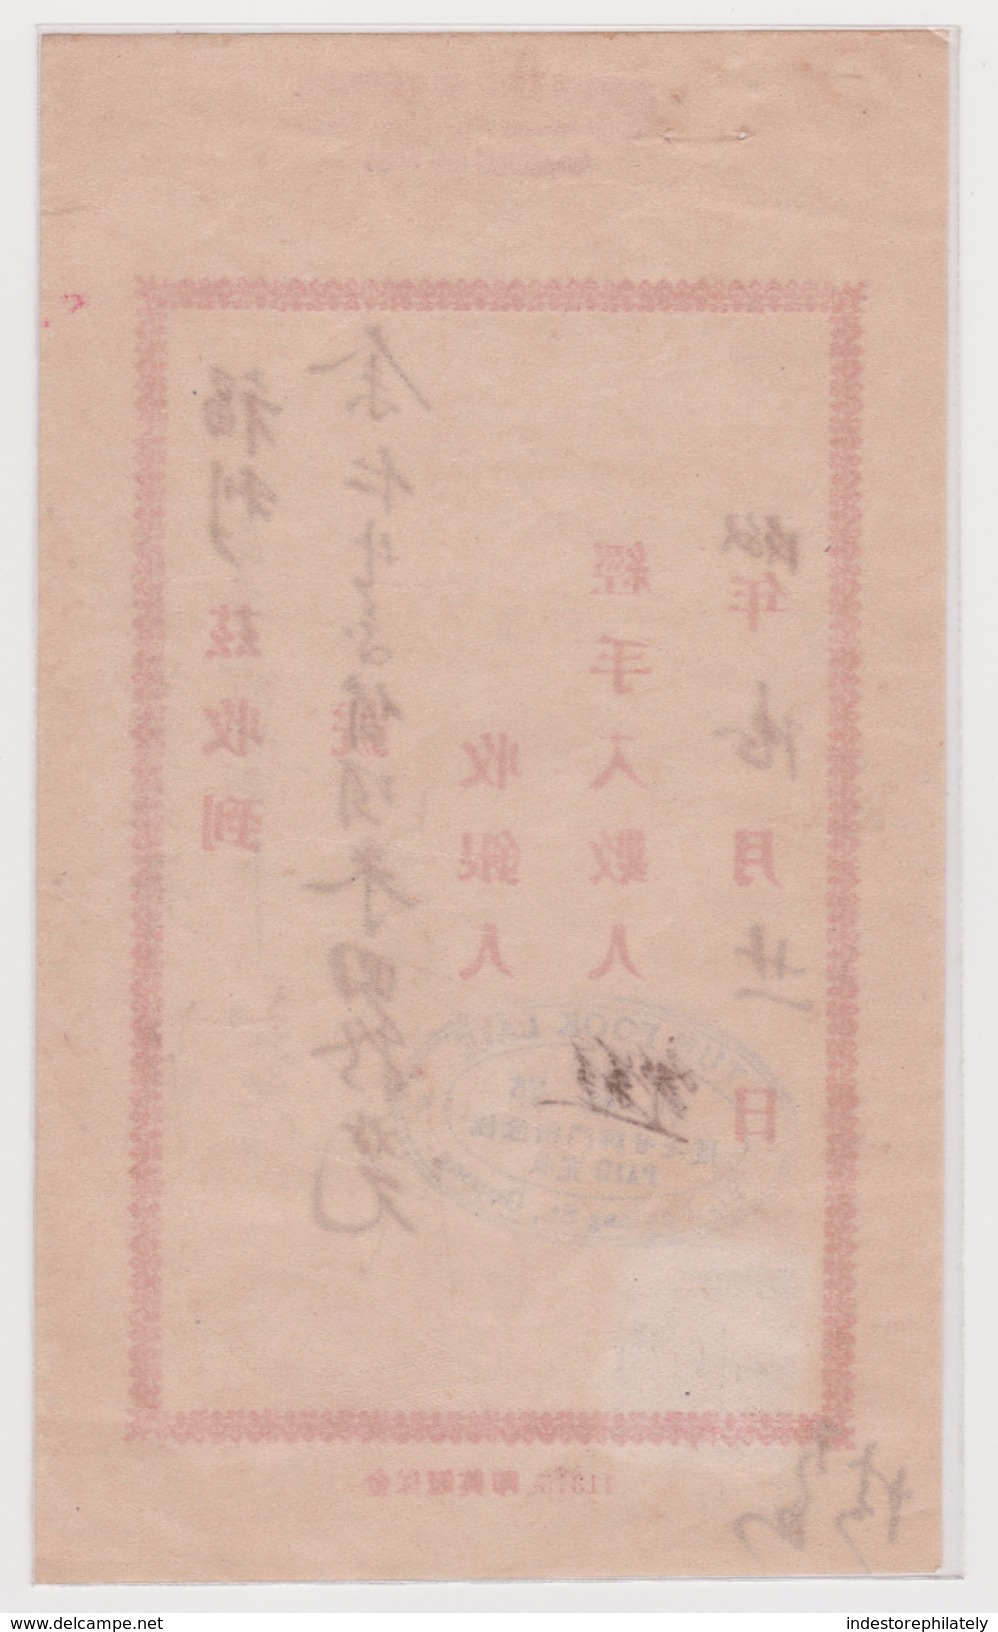 MALAYSIA 1954 Gopeng (Perak) Receipt Of Payment From Eu Yang Sang (M52) - Perak